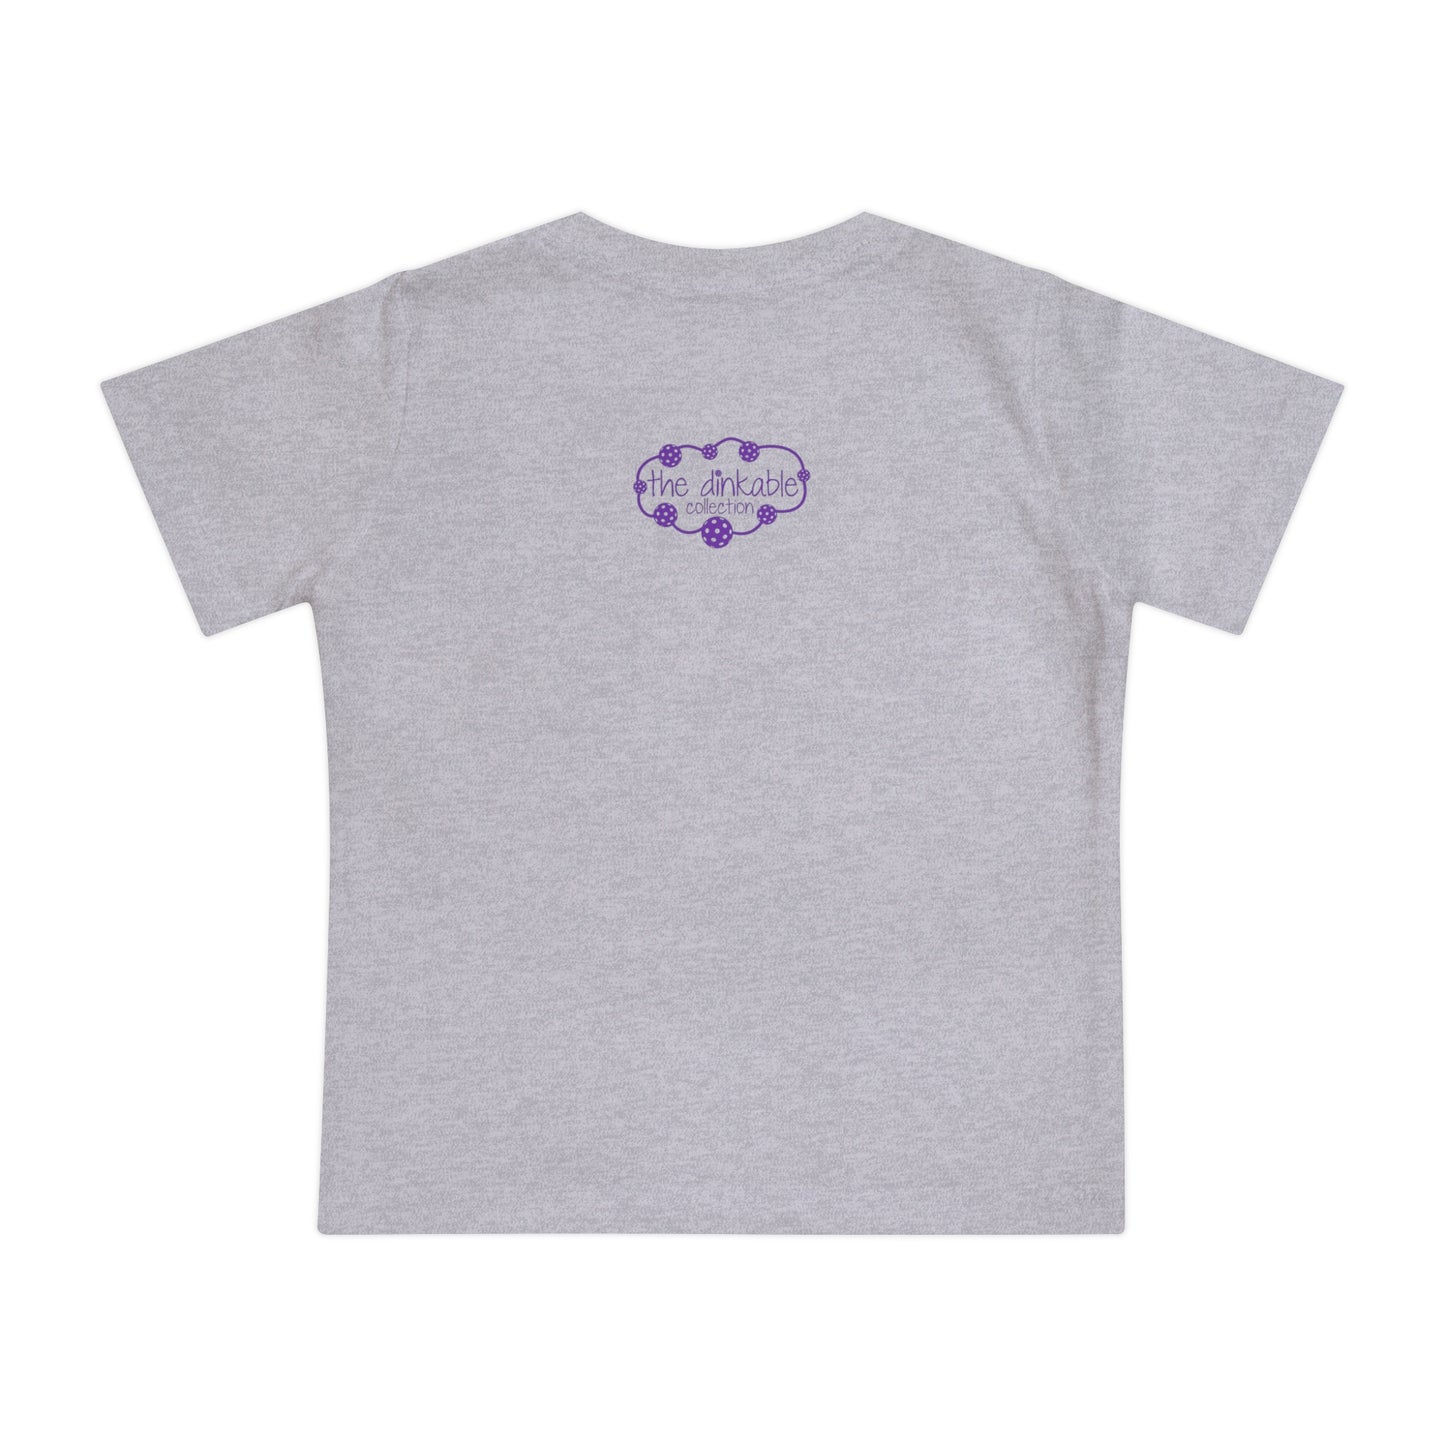 Pickleball Baby Short Sleeve T-Shirt - Daddy's little dinker